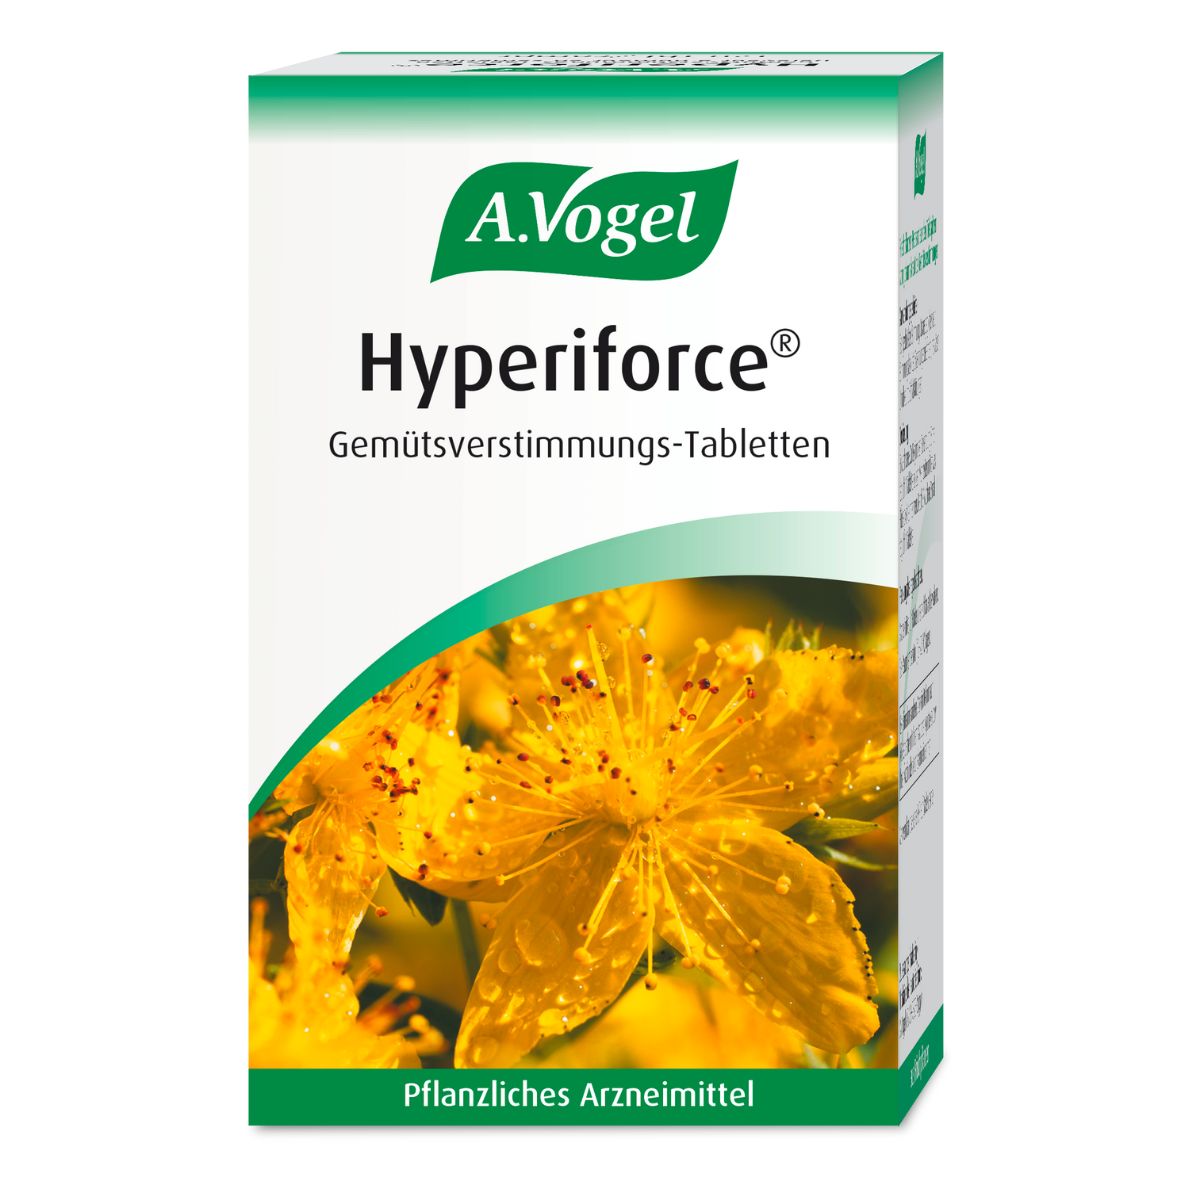 A.Vogel Hyperiforce Gemütsverstimmung Tabletten 